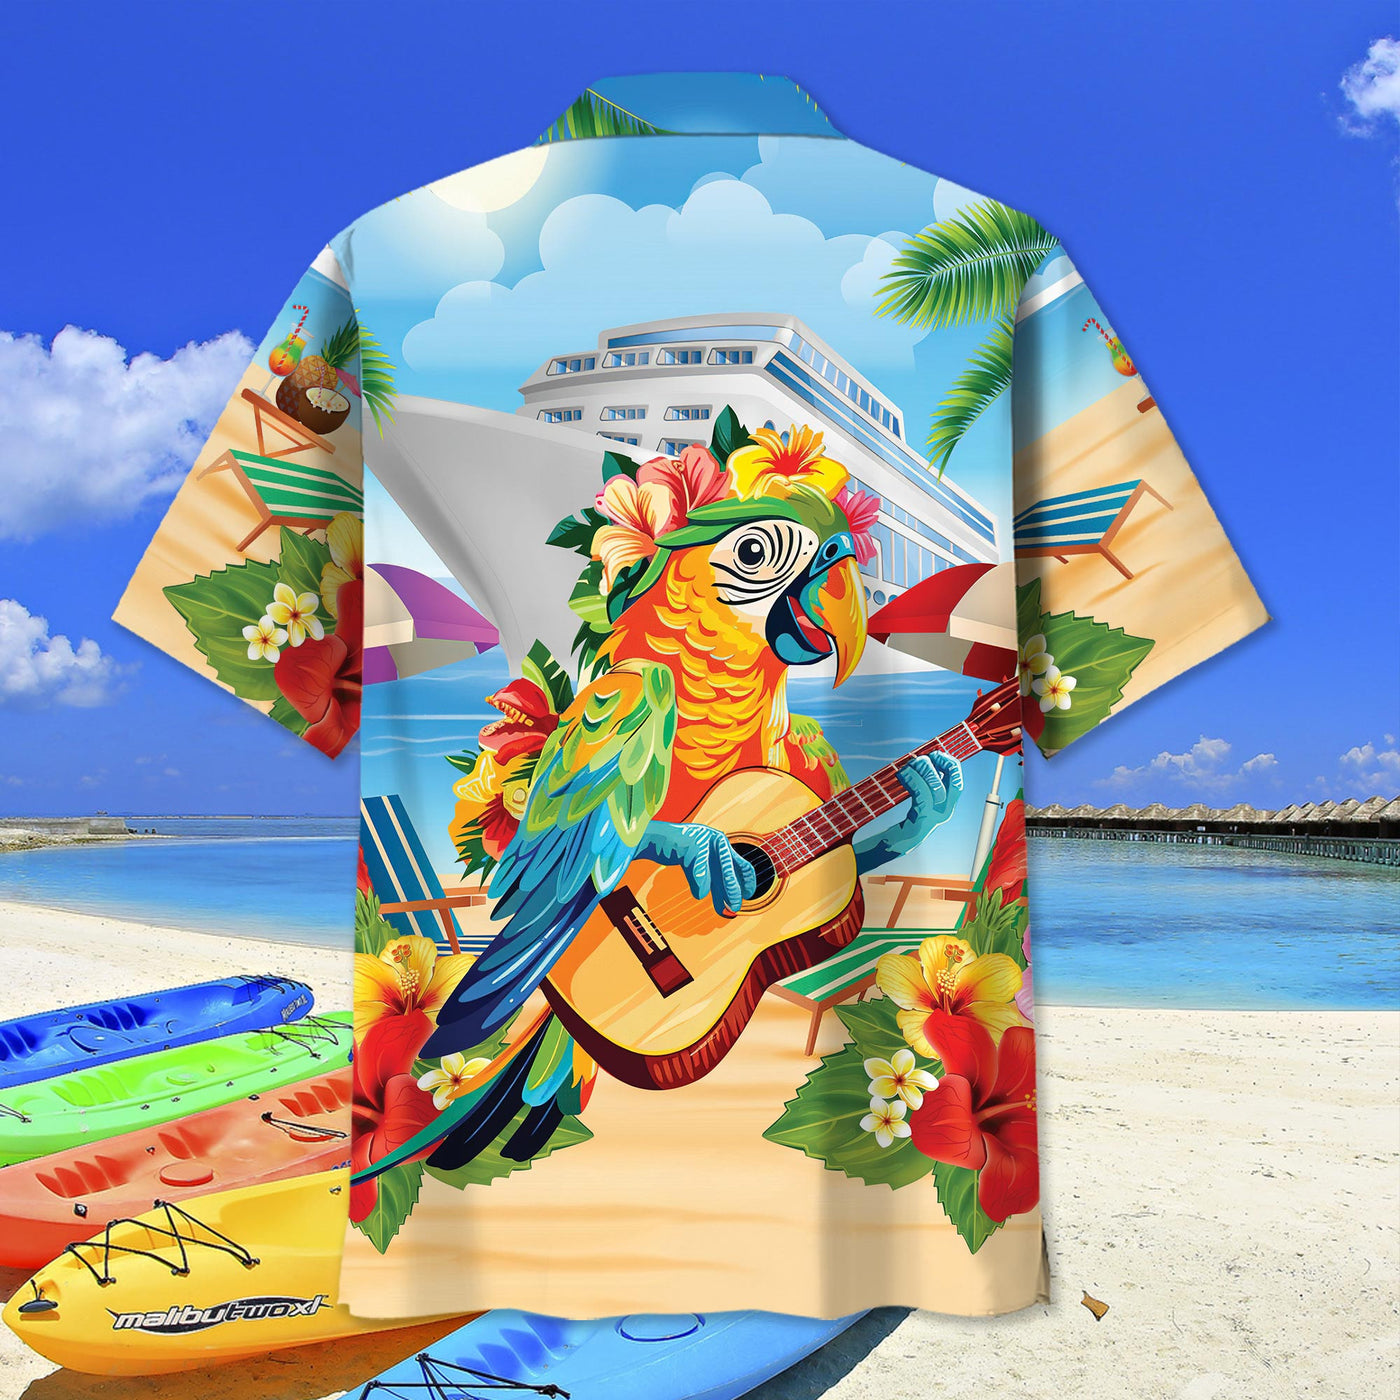 Parrot Cruise Aloha Hawaiian Shirt